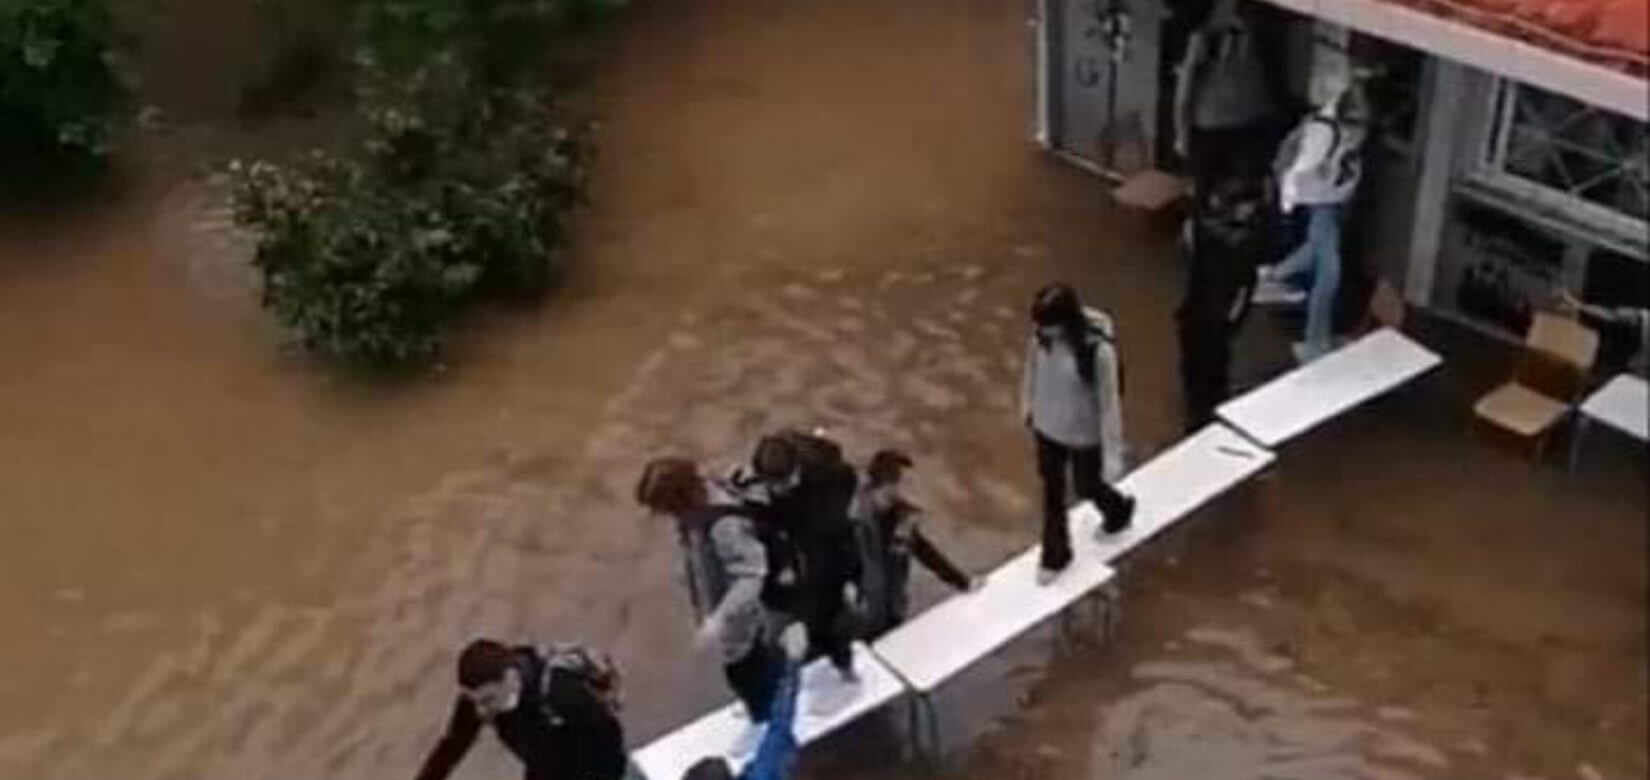 Μαθητές έφτιαξαν... γέφυρα με θρανία για να βγουν από πλημμυρισμένες τάξεις - Απίστευτες εικόνες στην Ελλάδα του 2021